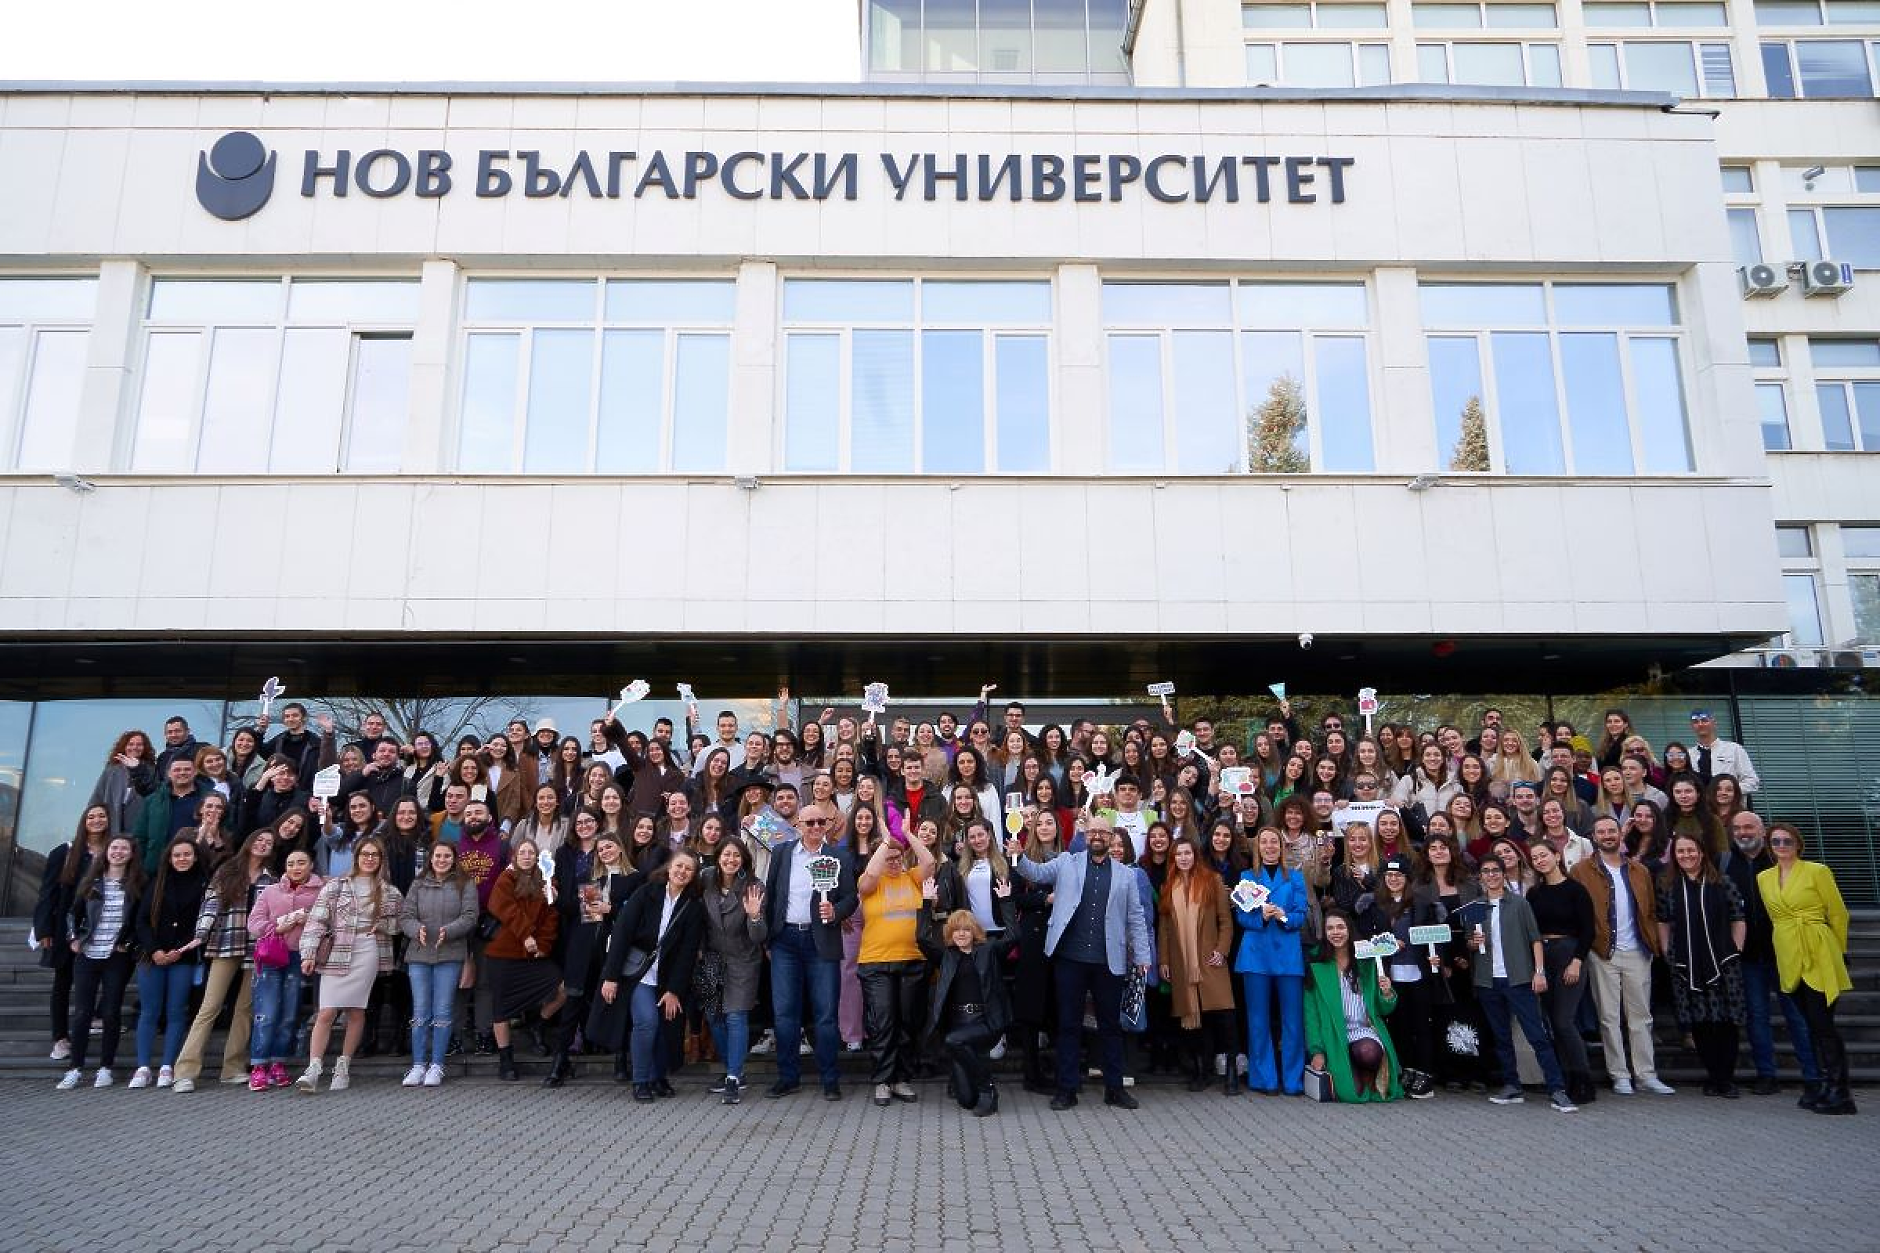 Близо 200 български и чуждестранни студенти премериха сили в 10-ото юбилейно издание на Рекламна академия